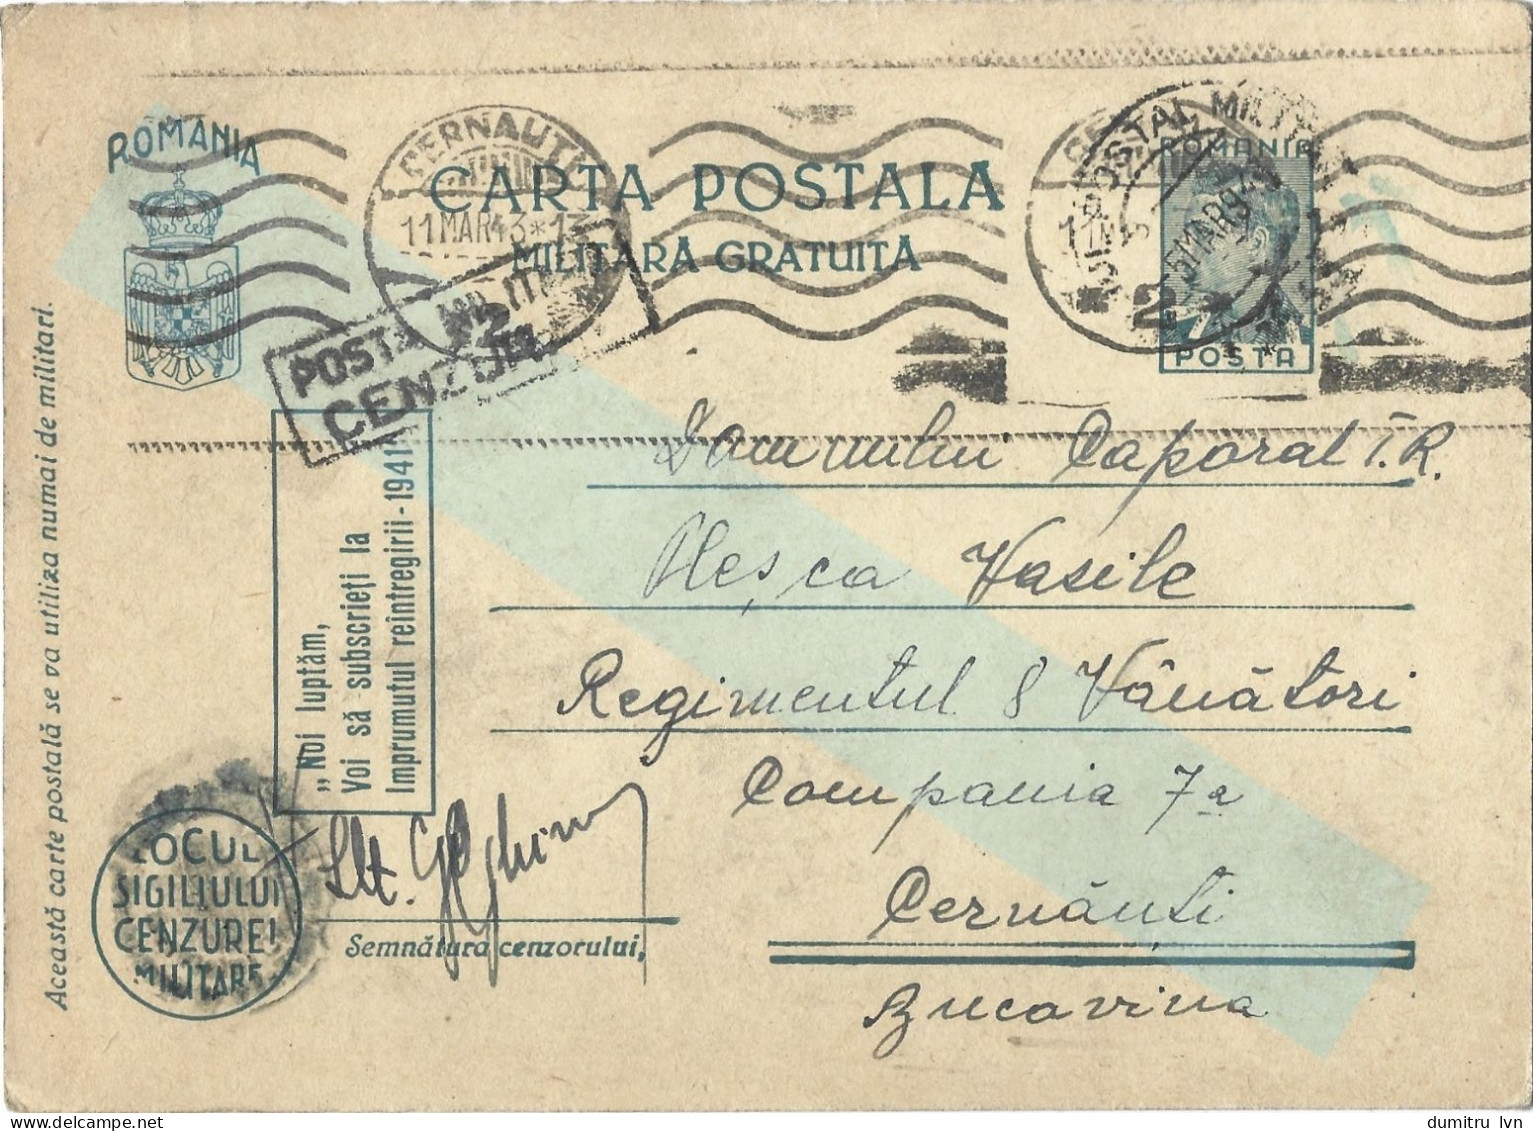 ROMANIA 1943 CERNAUTI, CENSORED, OPM.Nr.33, FREE MILITARY, WW2 POSTCARD STATIONERY - Cartas De La Segunda Guerra Mundial